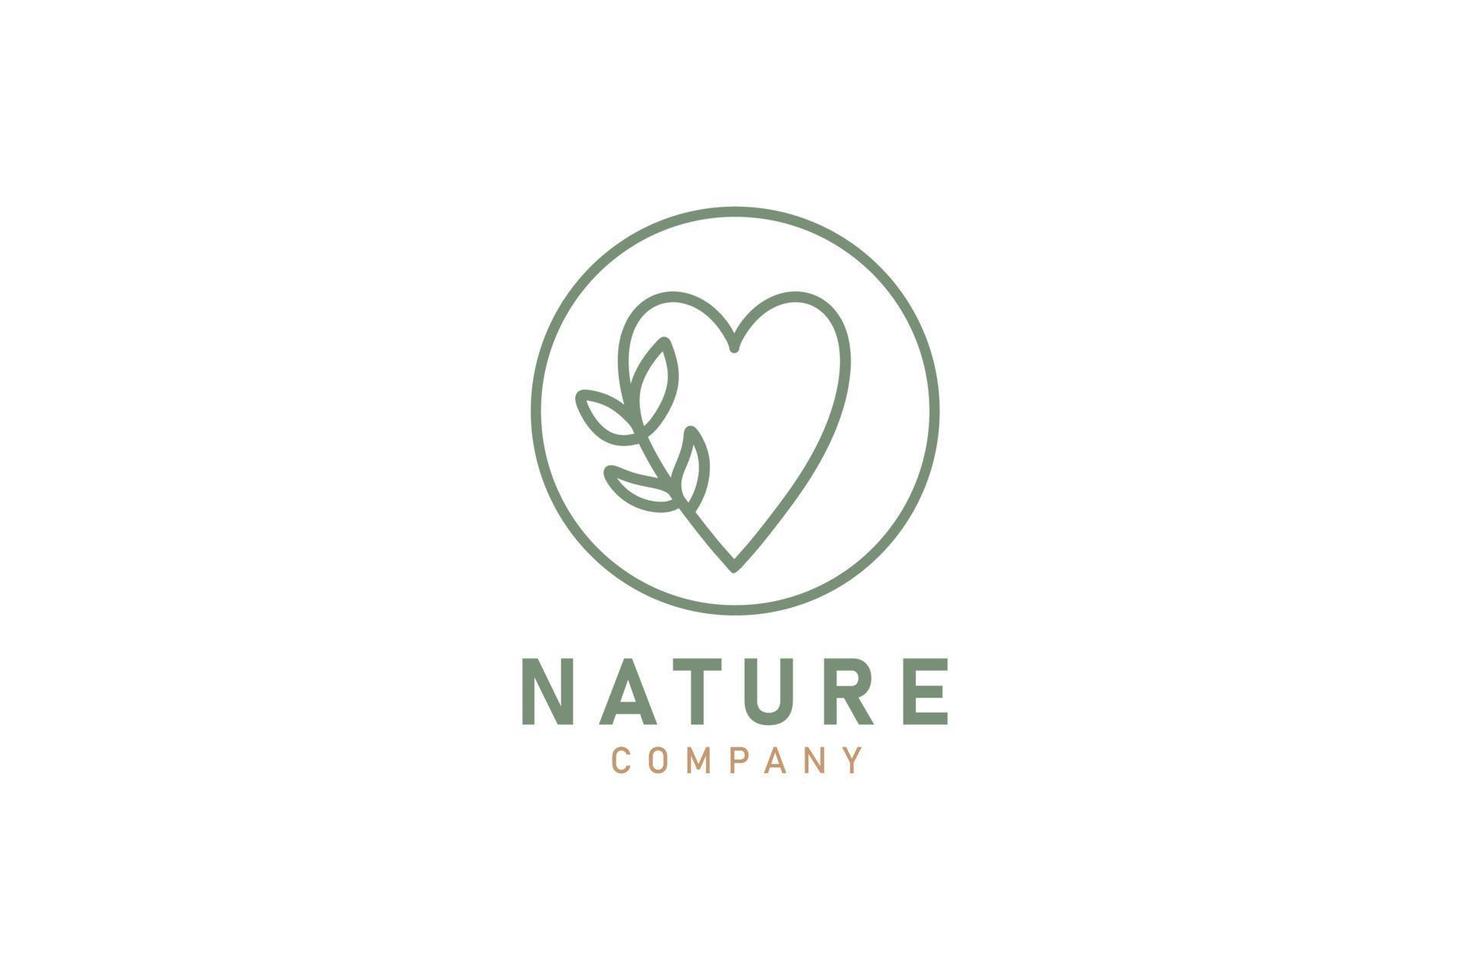 l'amour la nature feuille décoration logo conception icône vecteur